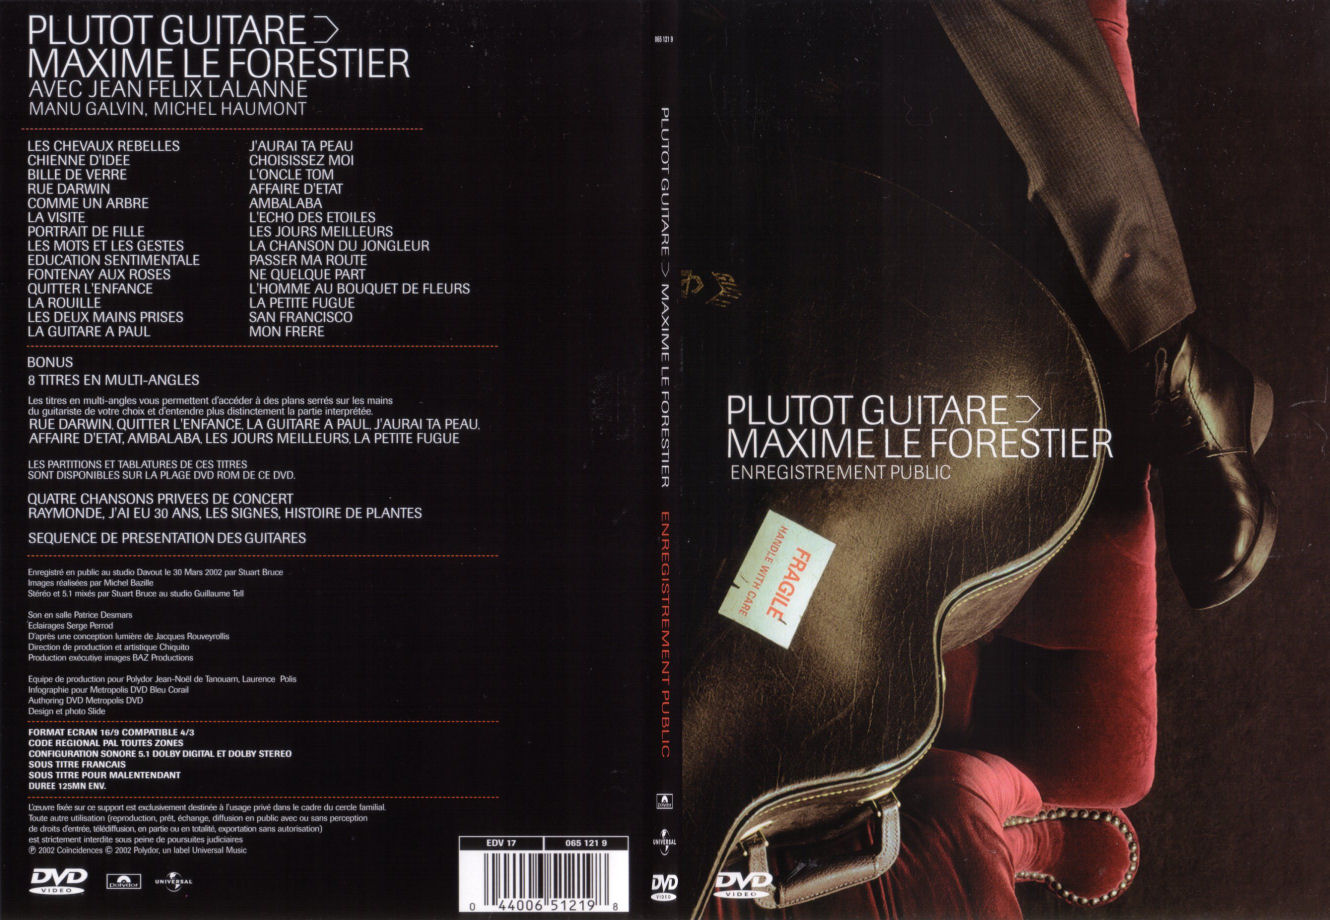 Jaquette DVD Maxime Le Forestier - Plutot guitare - SLIM